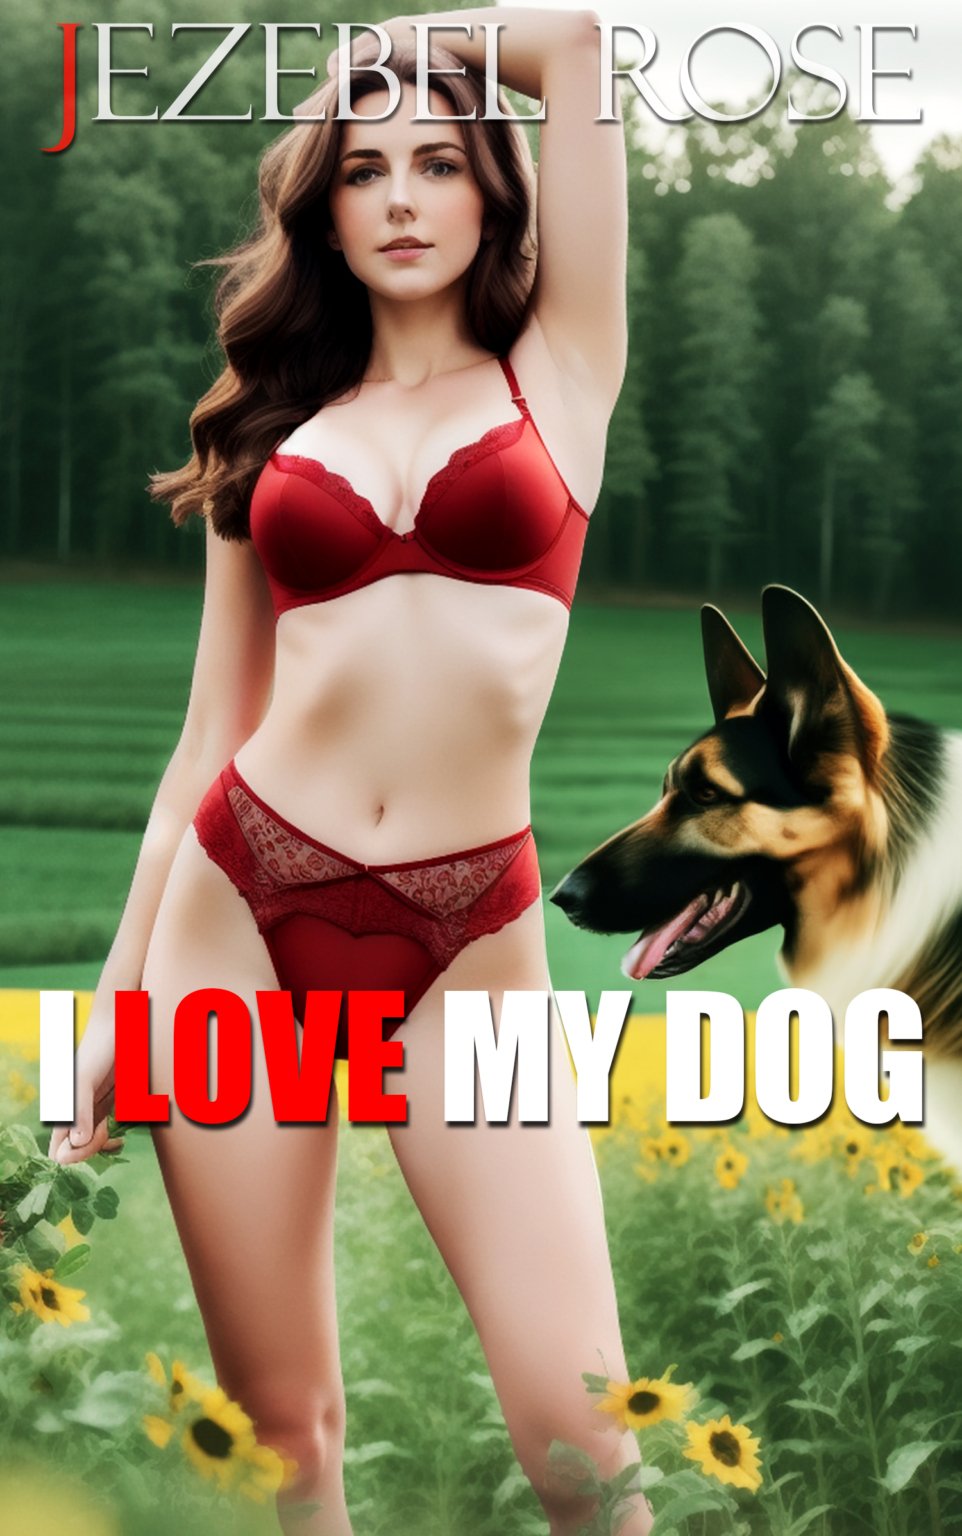 I Love My Dog erotica bestiality story by Jezebel Rose